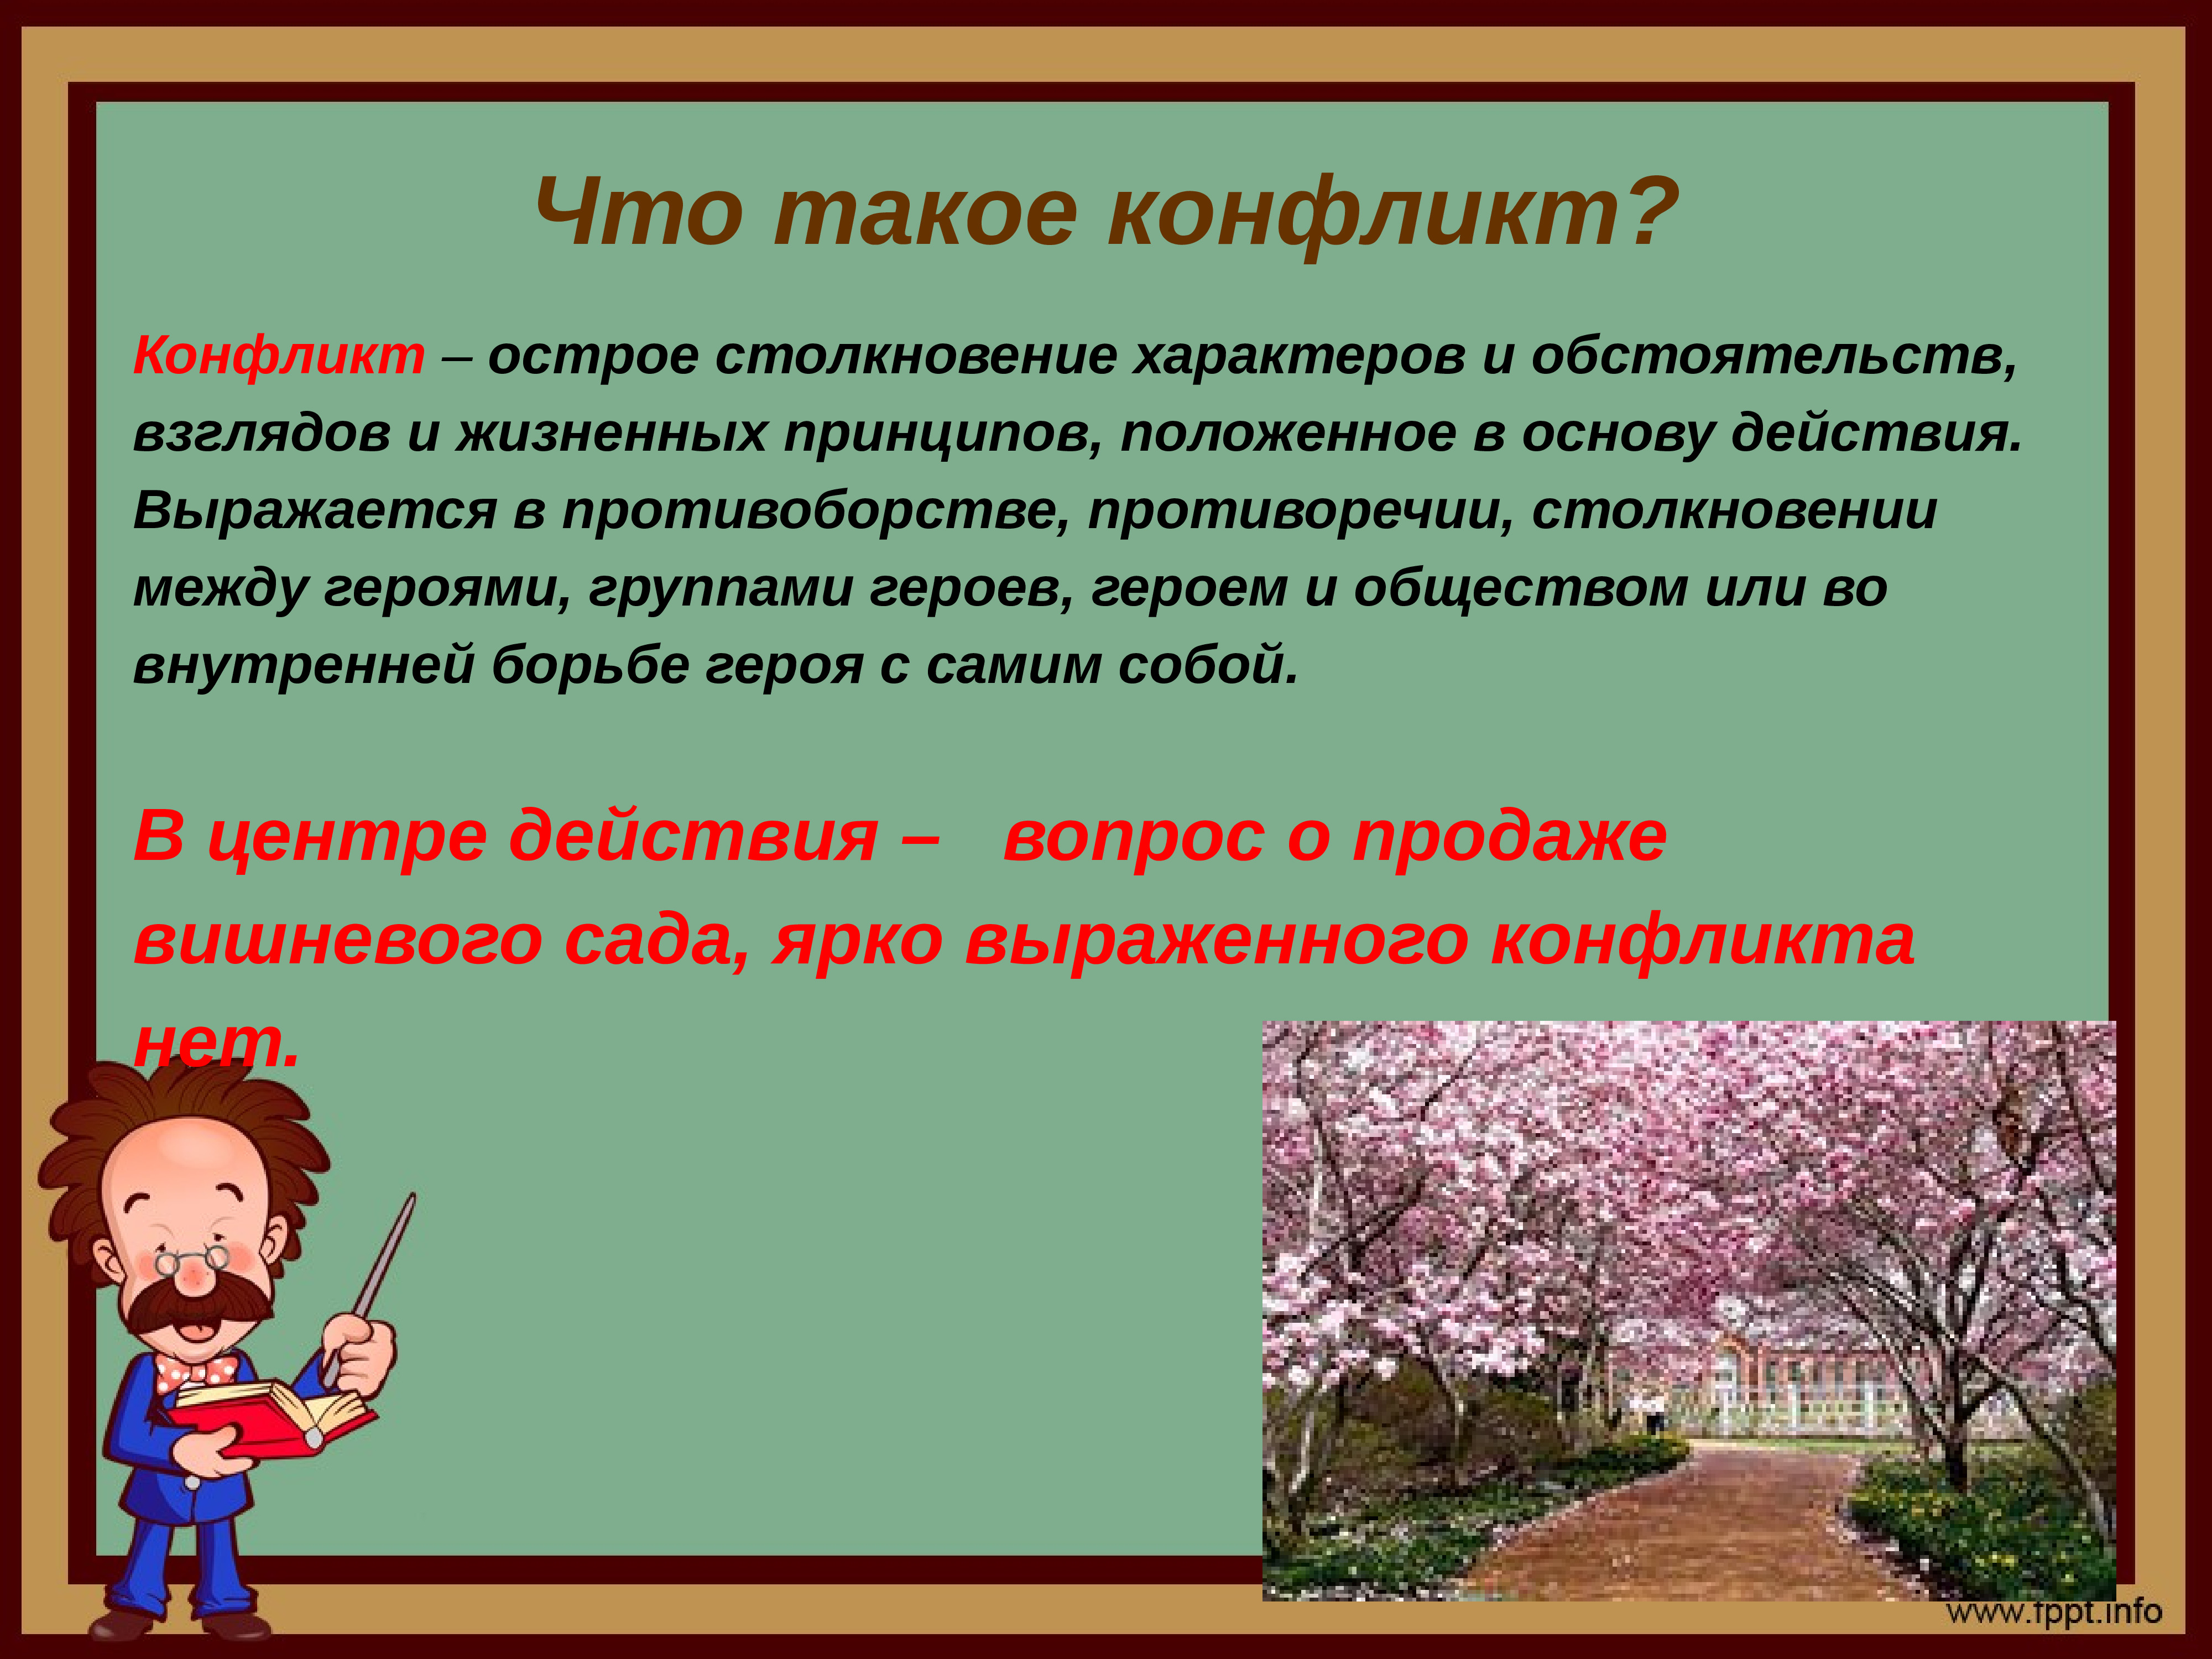 Чехов вишневый сад конфликт пьесы